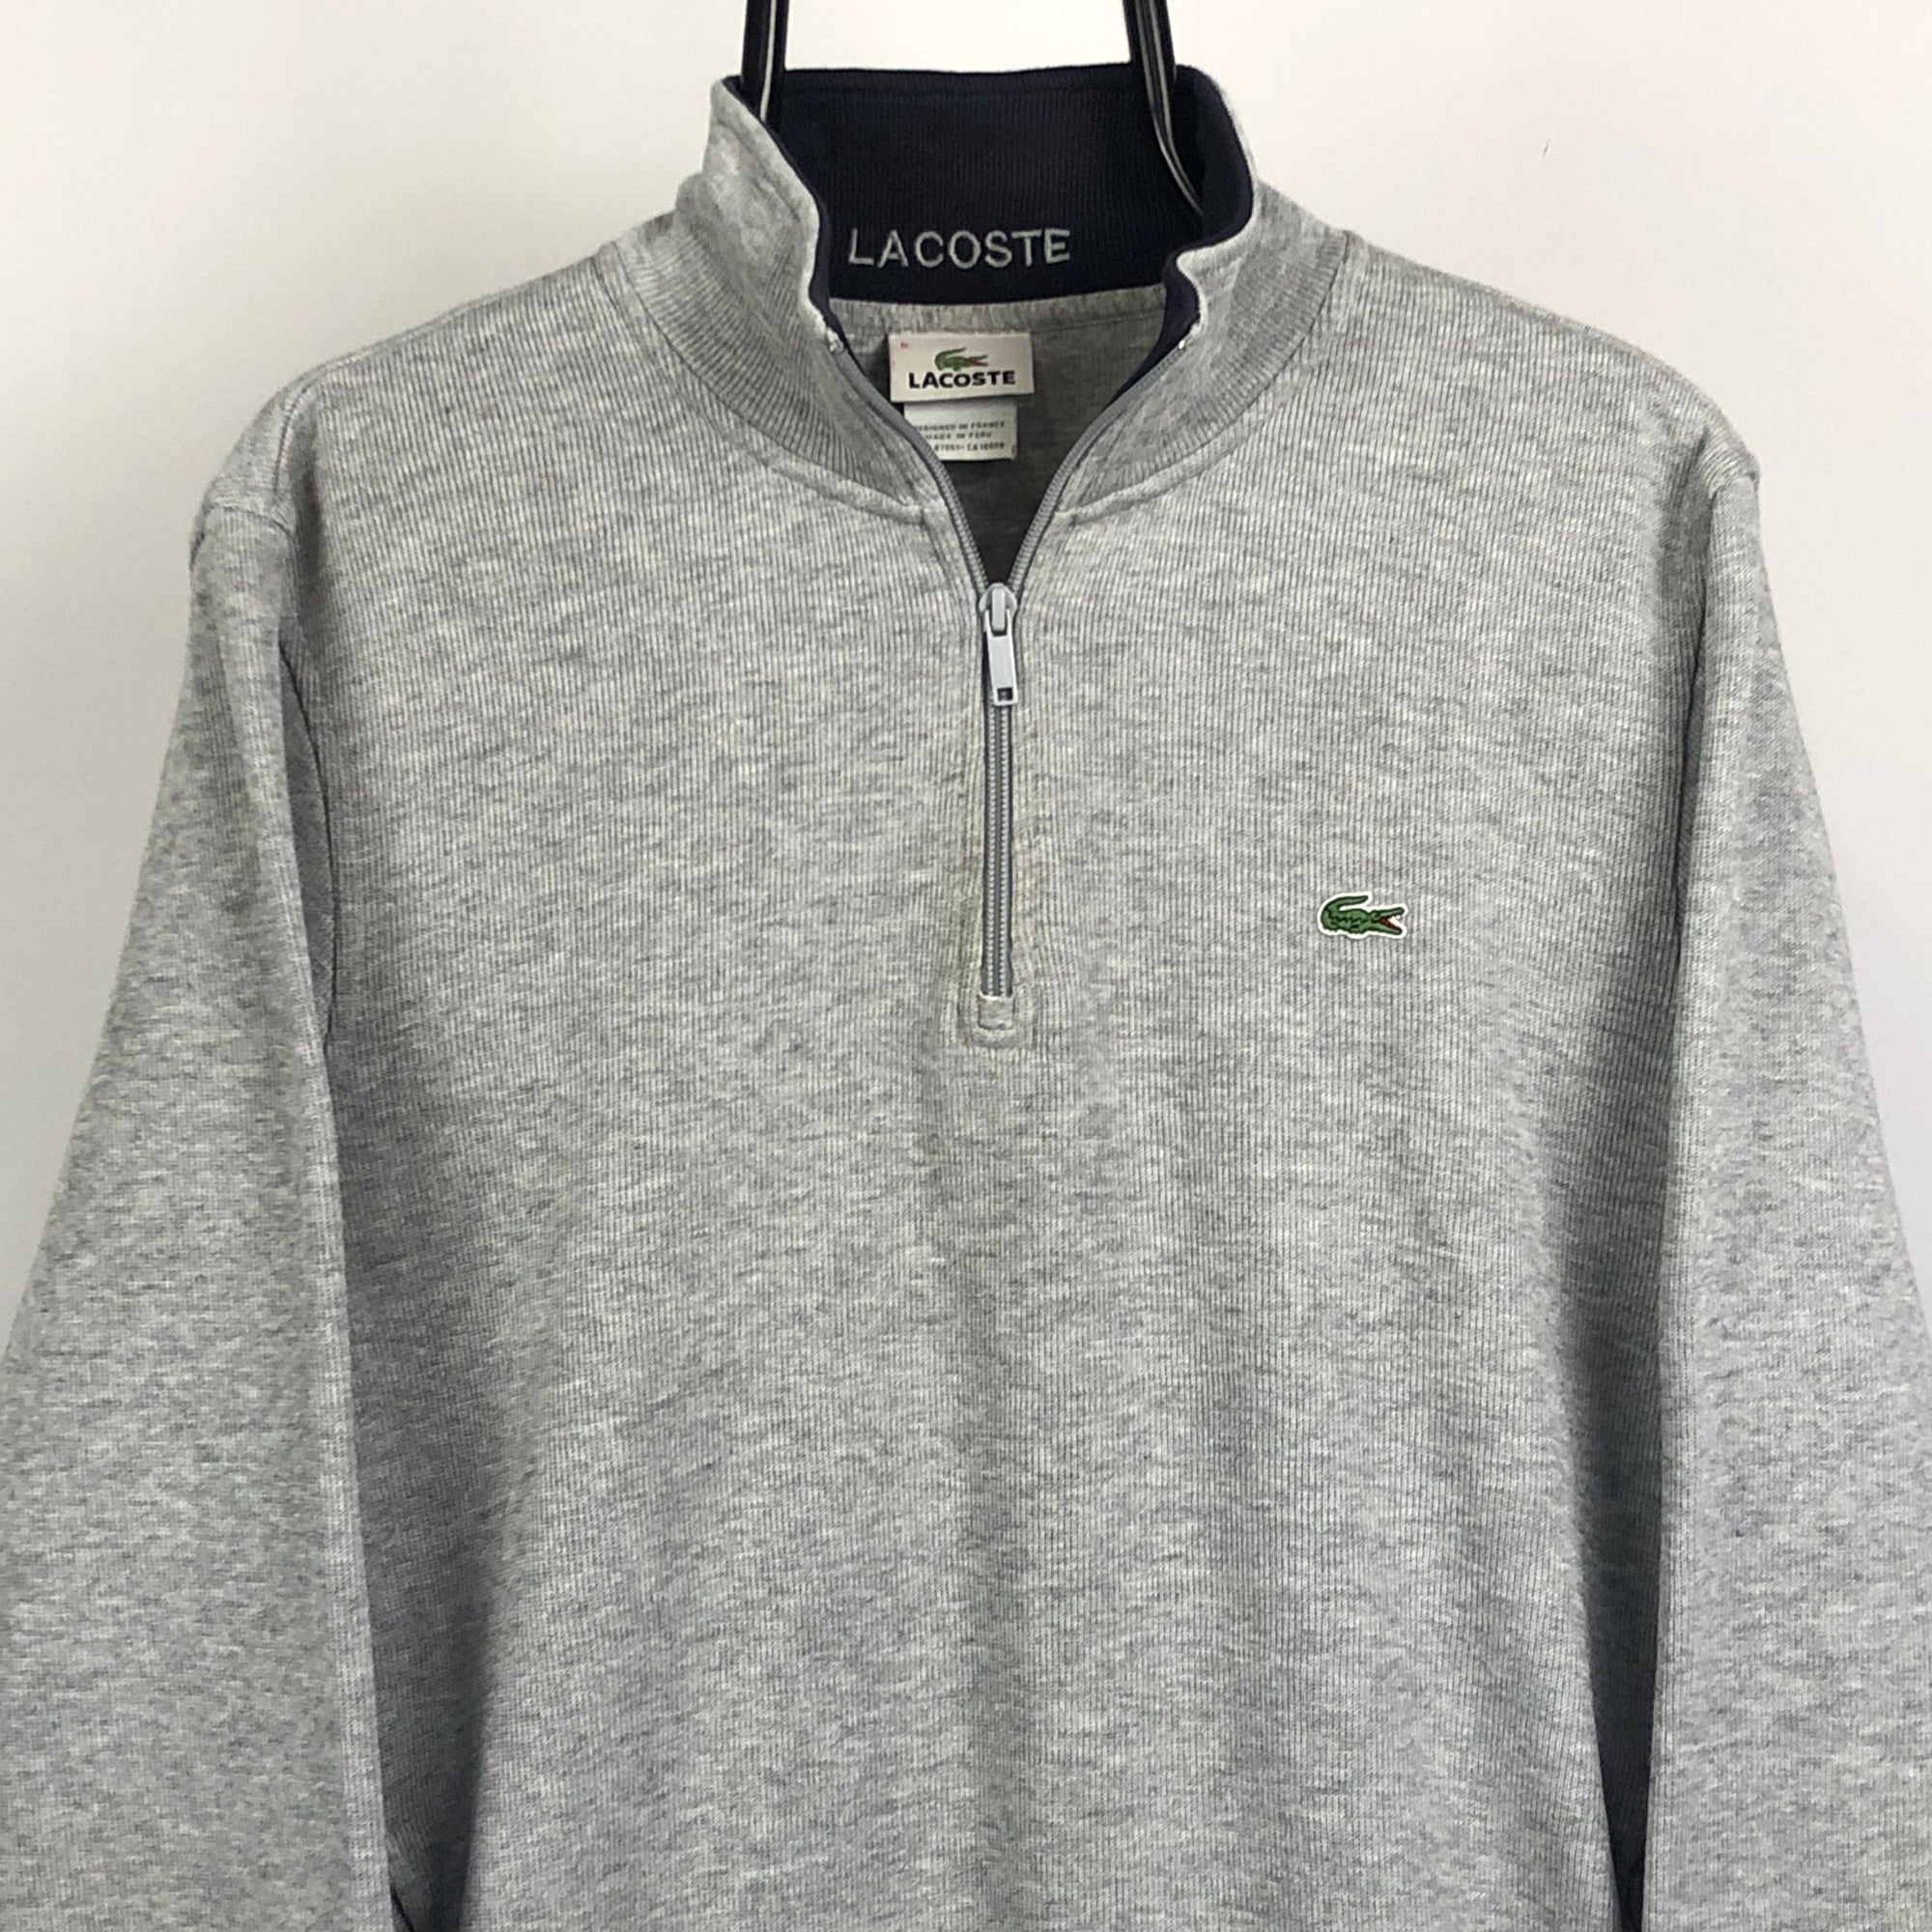 Lacoste 1/4 Zip Sweatshirt in Grey - Men's Medium/Women's Large